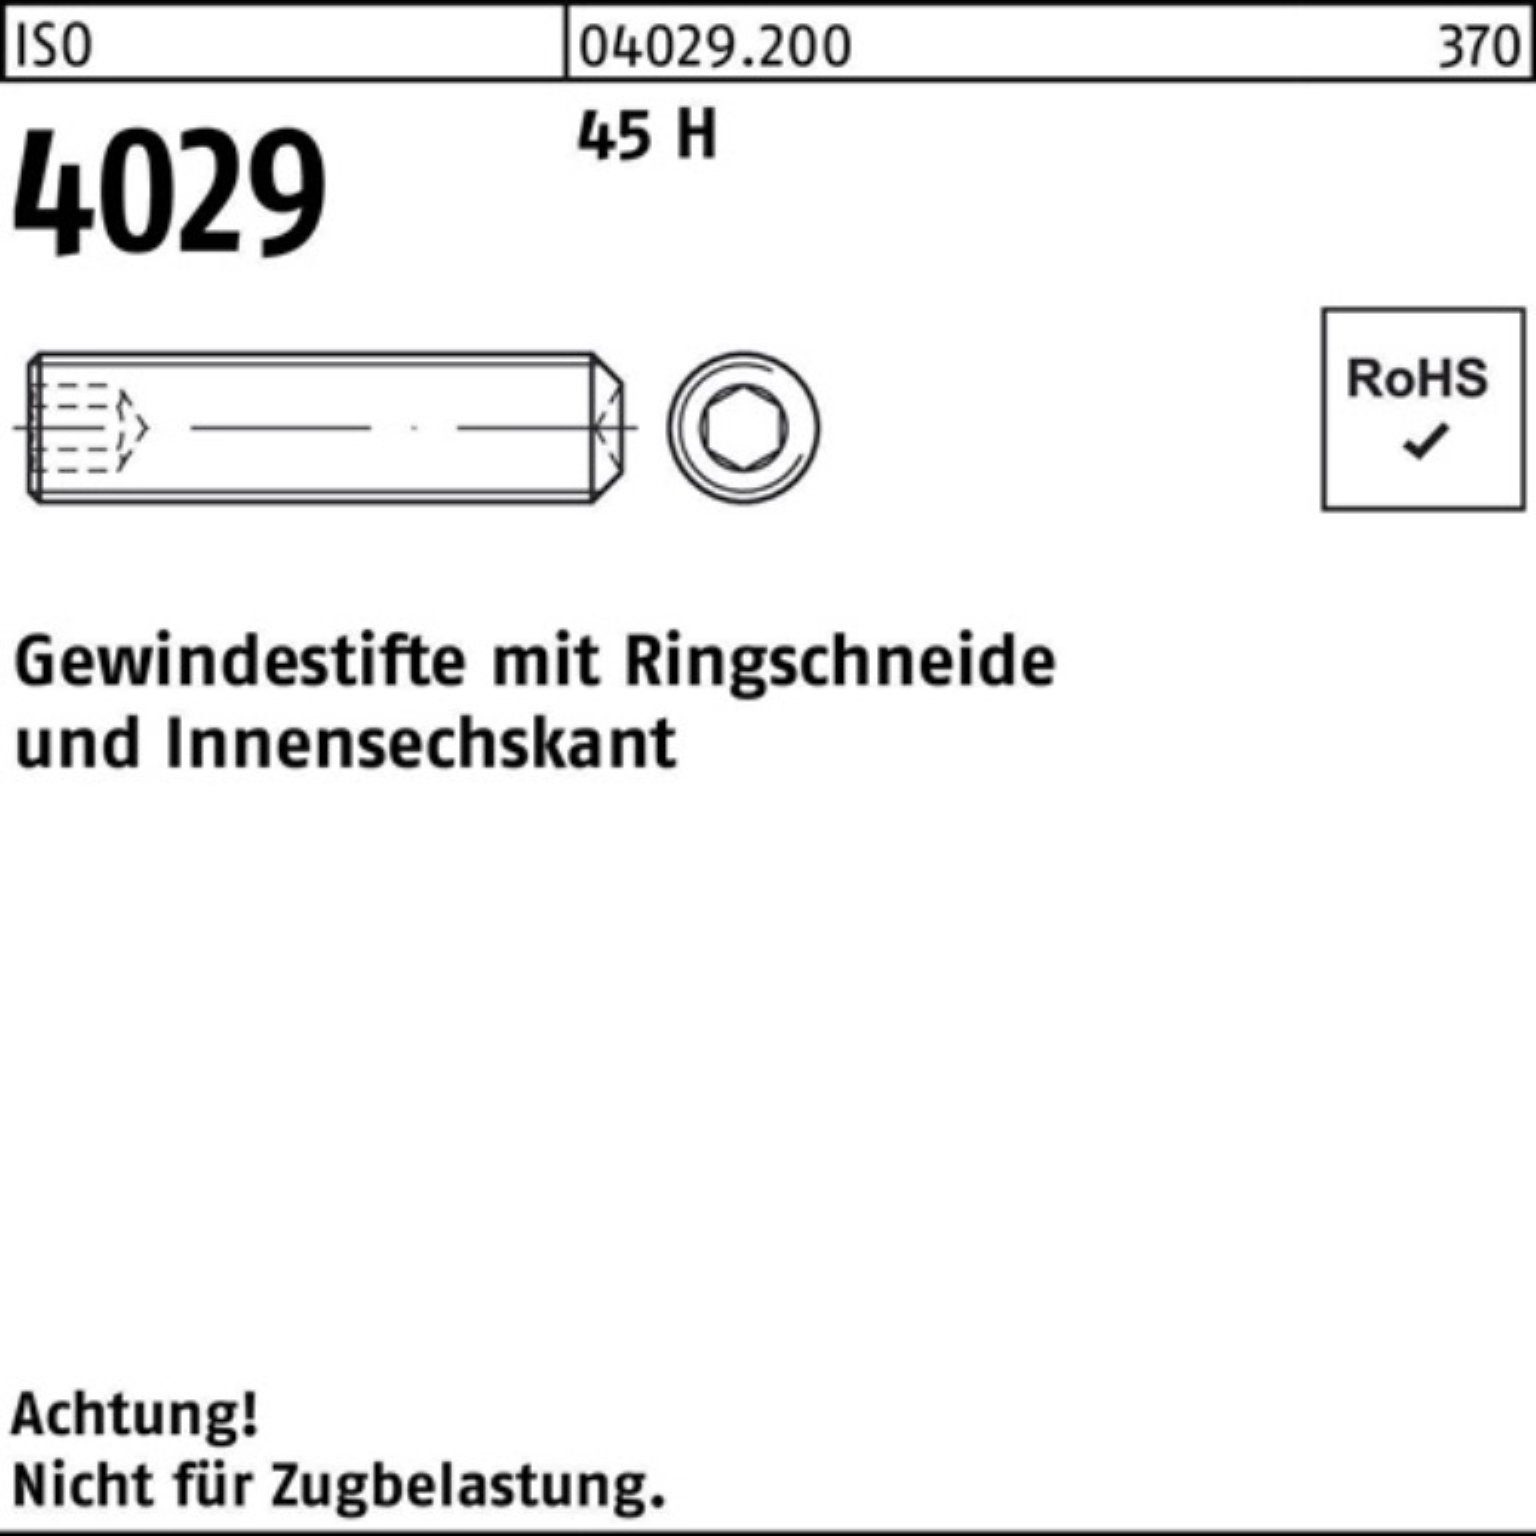 10 Reyher M3x 4029 Ringschneide/Innen-6kt 1000er Gewindestift Gewindebolzen 45 1 H ISO Pack